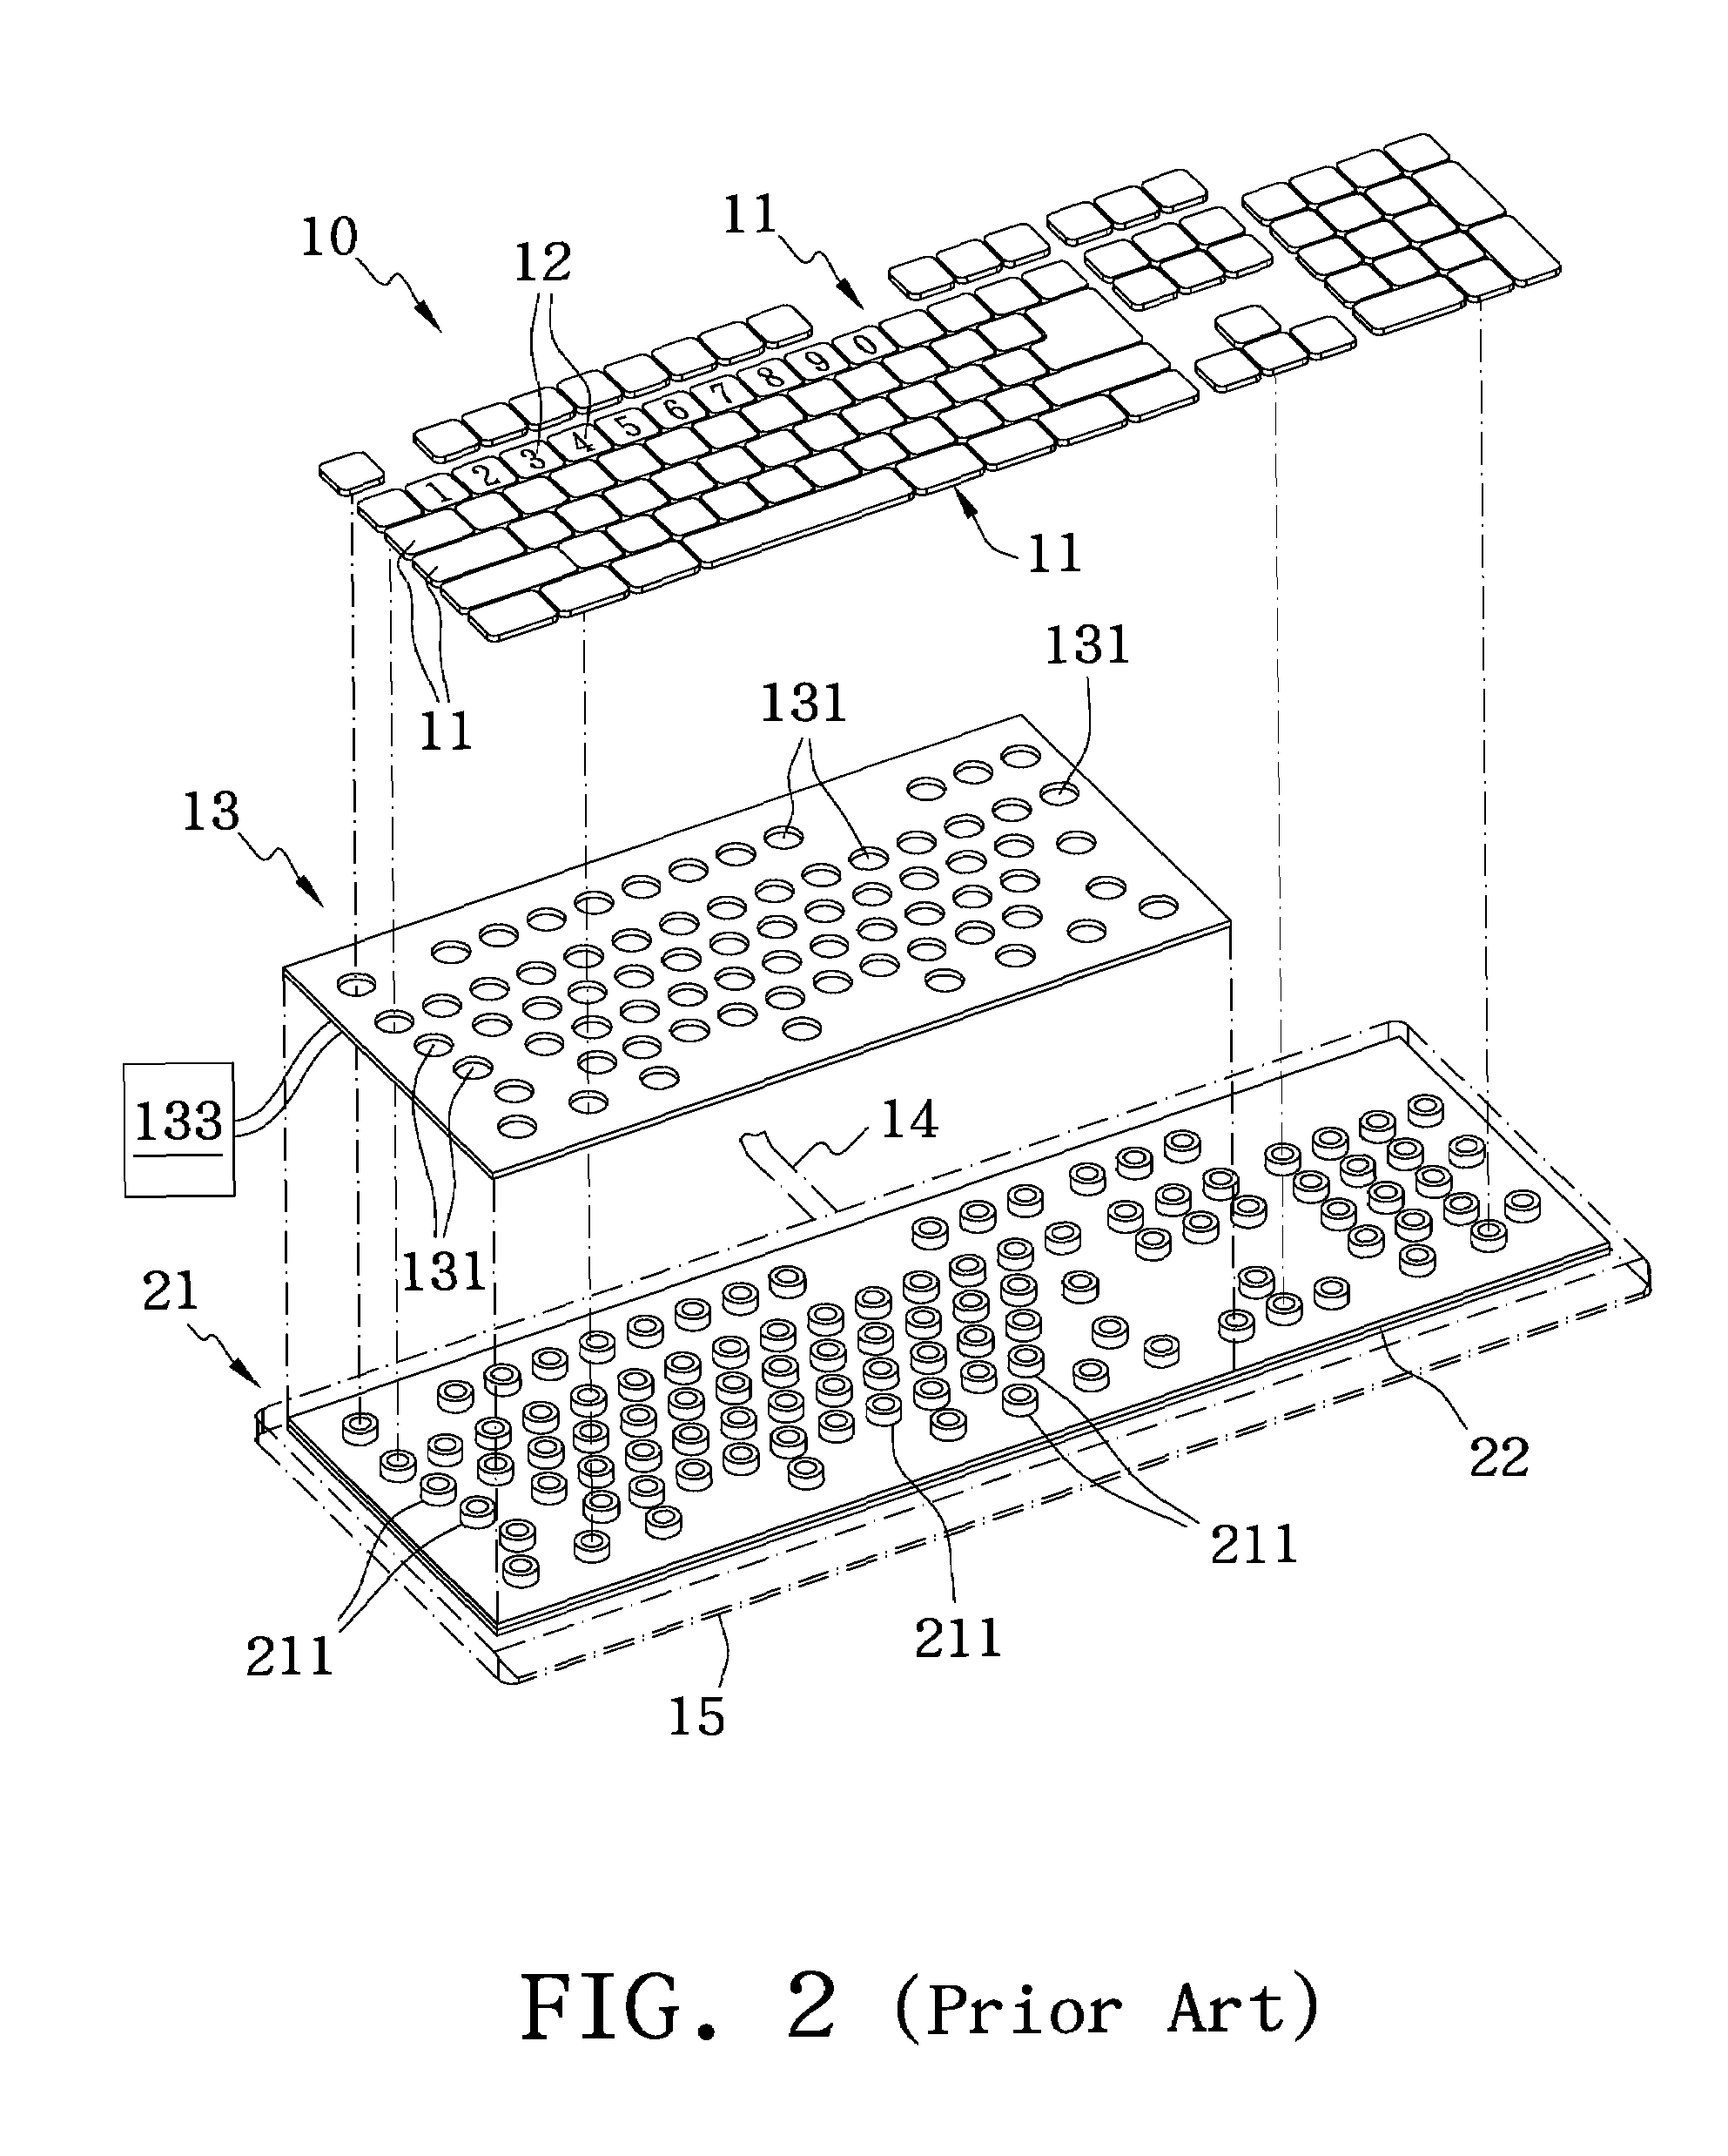 Illuminating membrane switch and illuminating keypad using the same